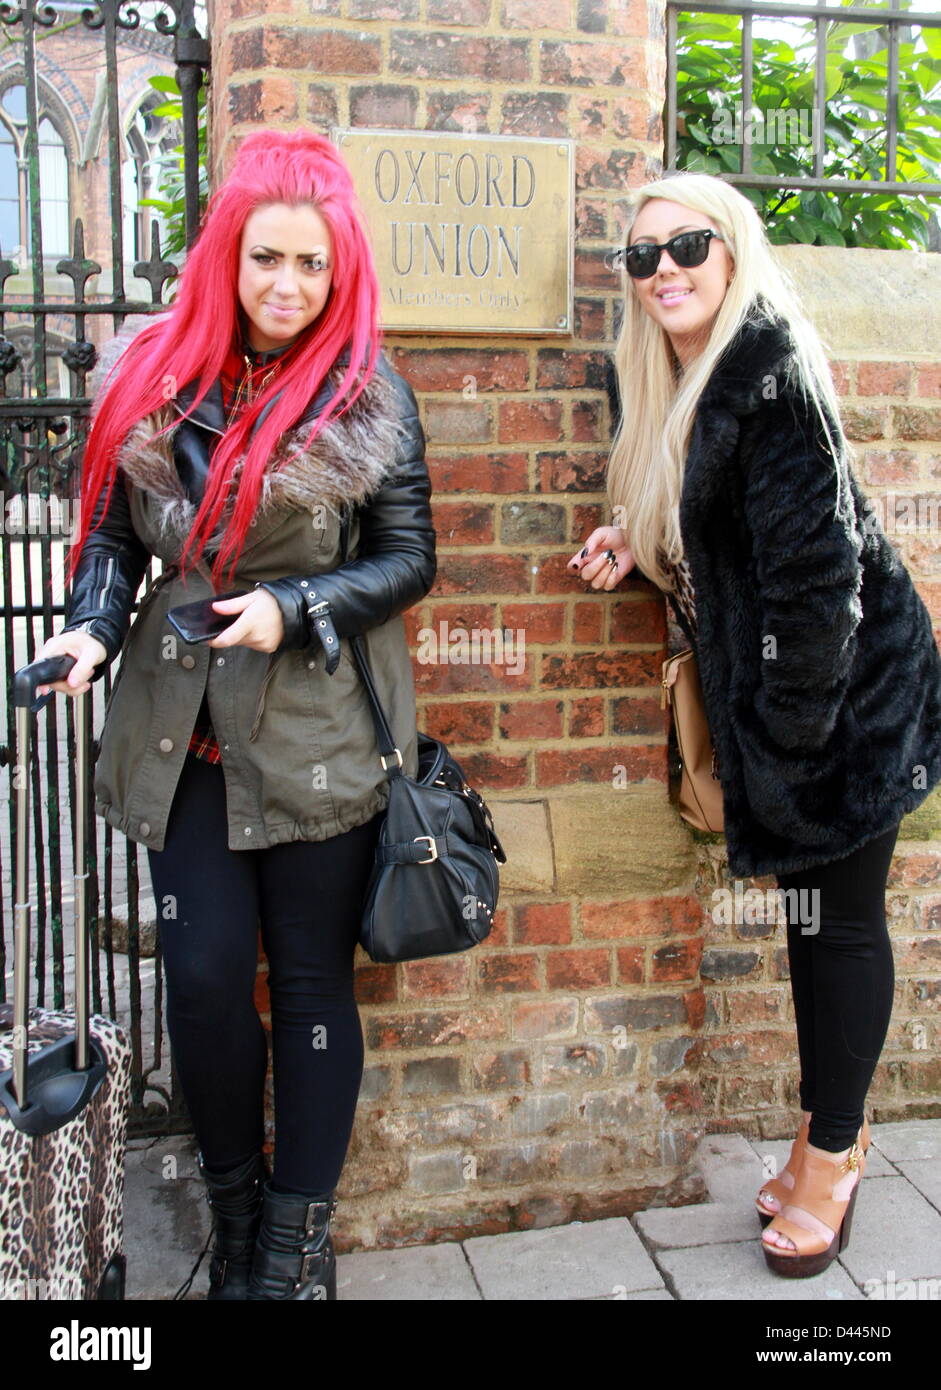 Oxford, UK 04 mars 2013 Geordie shore acteurs arrive à Oxford Union. Sophie Kasaei, 23 et Holly Hagan, 20 étoiles de la MTV reality show pour parler aux membres de l'Oxford Union. Petericardo Lusabia Crédit/Alamy Live News Banque D'Images